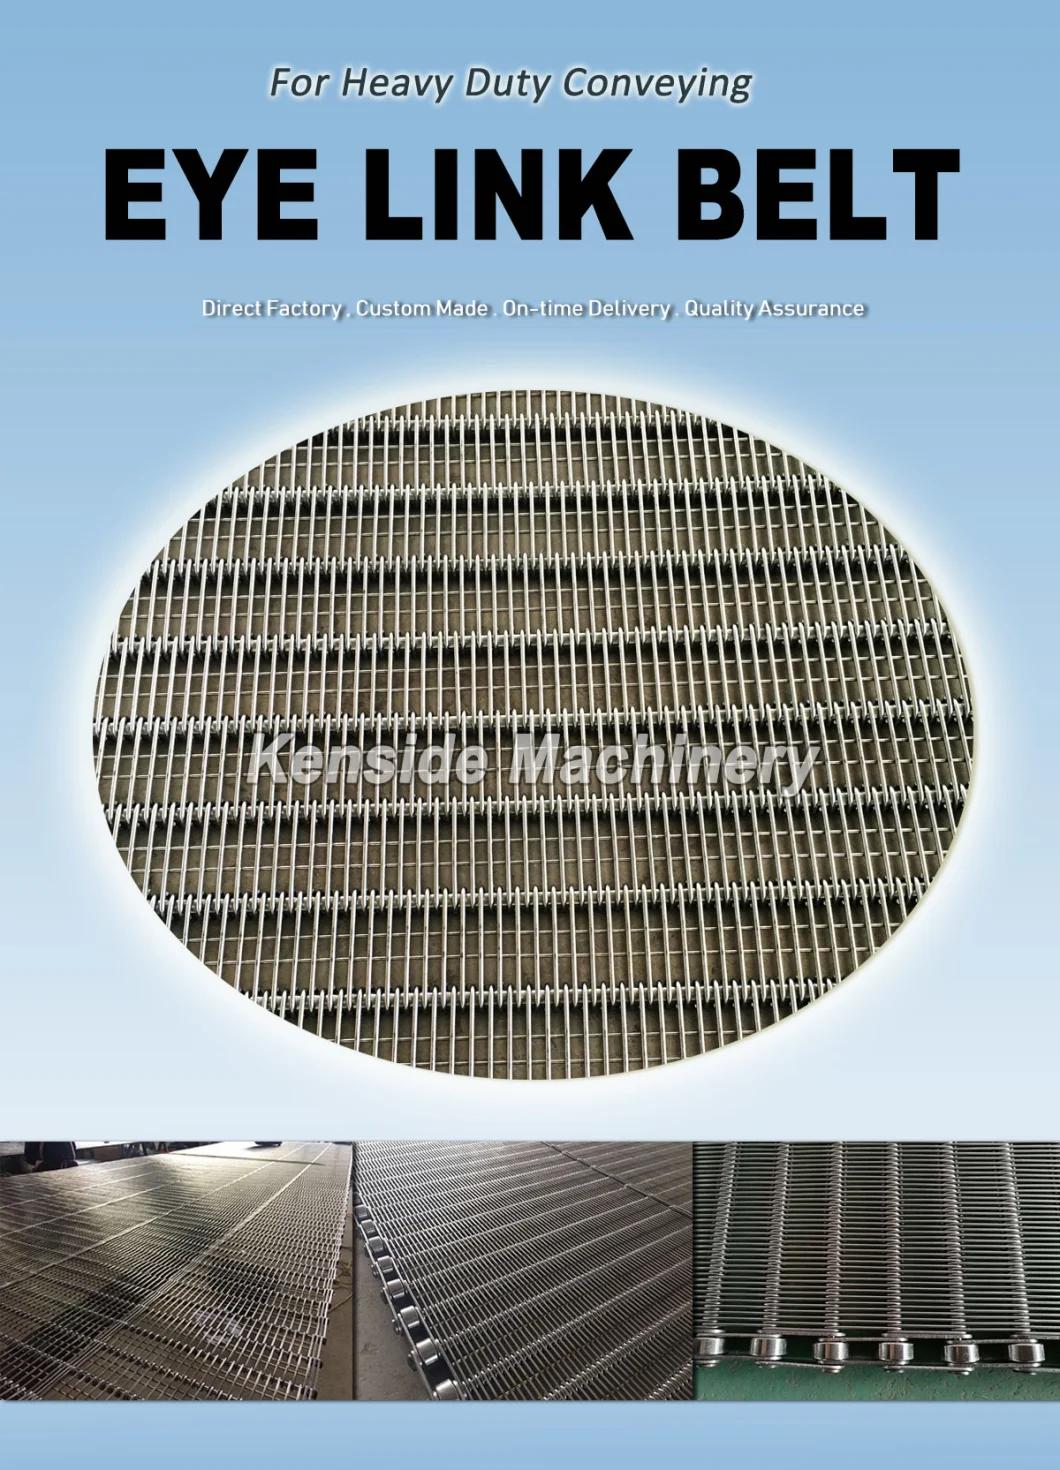 Eye Link Belt for Automotive